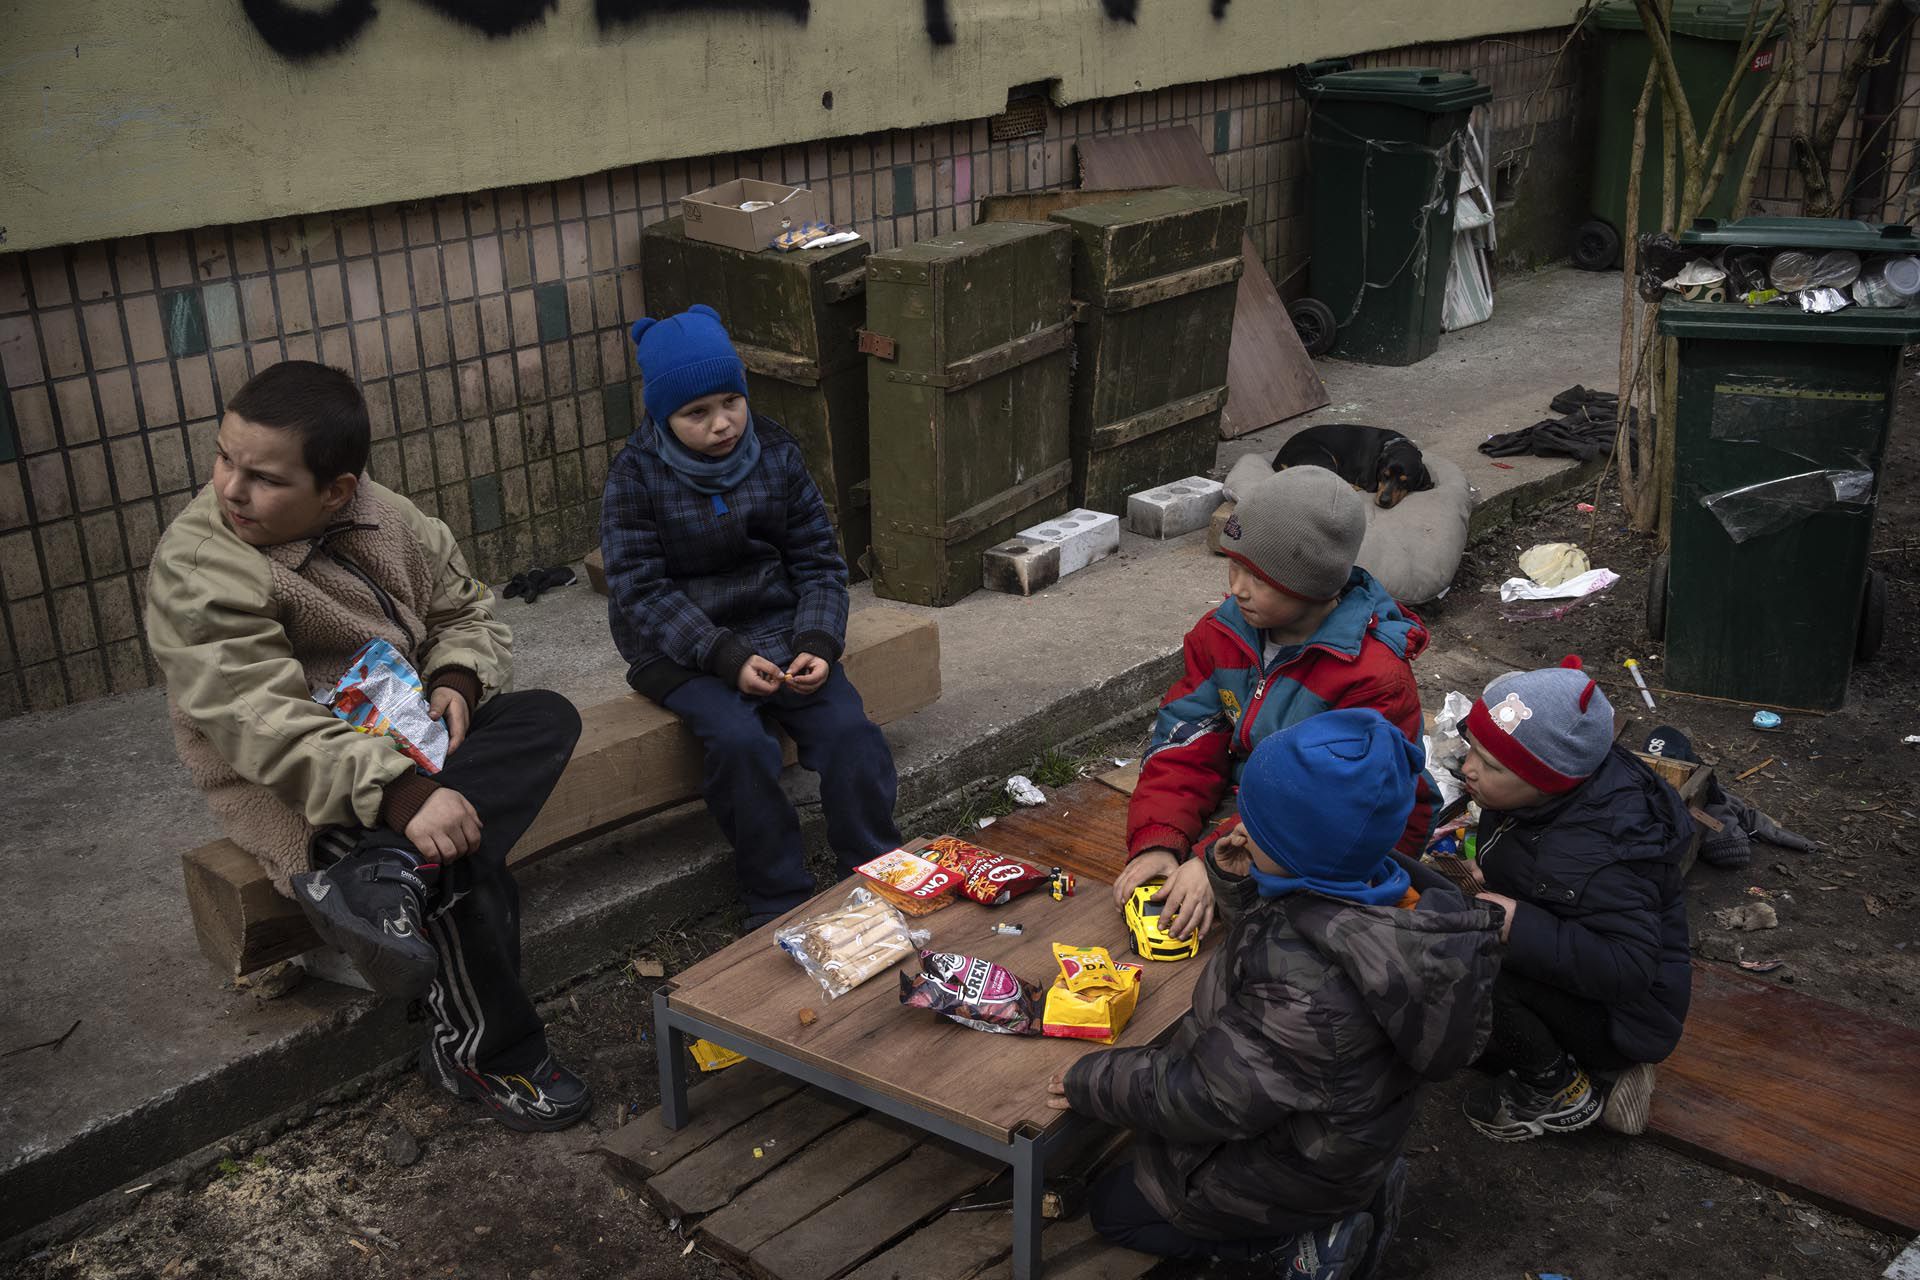 Fotos AP: Imágenes no publicadas de la guerra en Ucrania